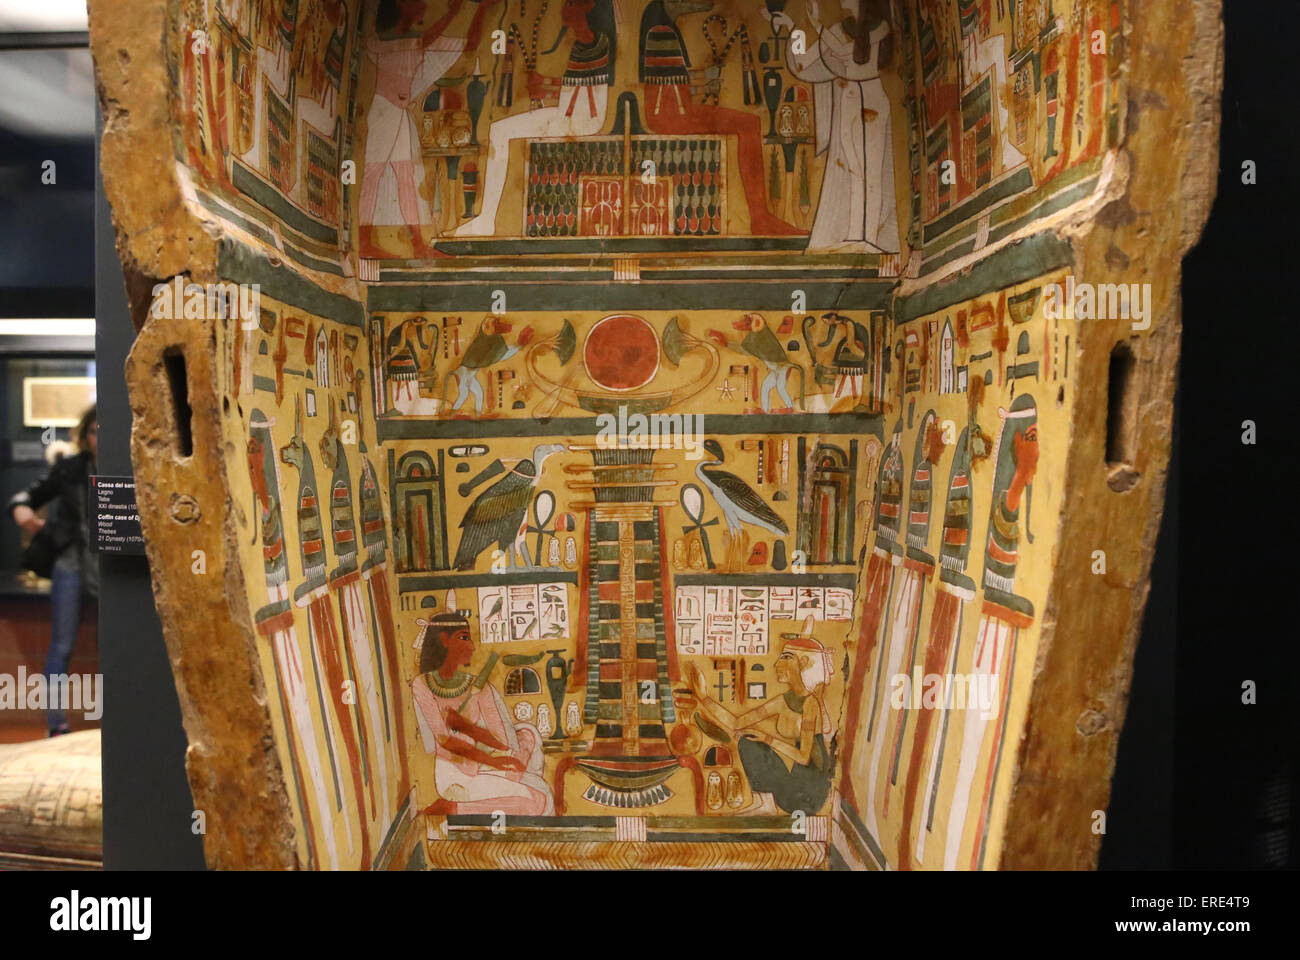 El antiguo Egipto. Ataúd caso de Djedhoriwefankh. La madera. Tebas. 21 dinastía (1070-945 a.C.). Vatian museos. Foto de stock